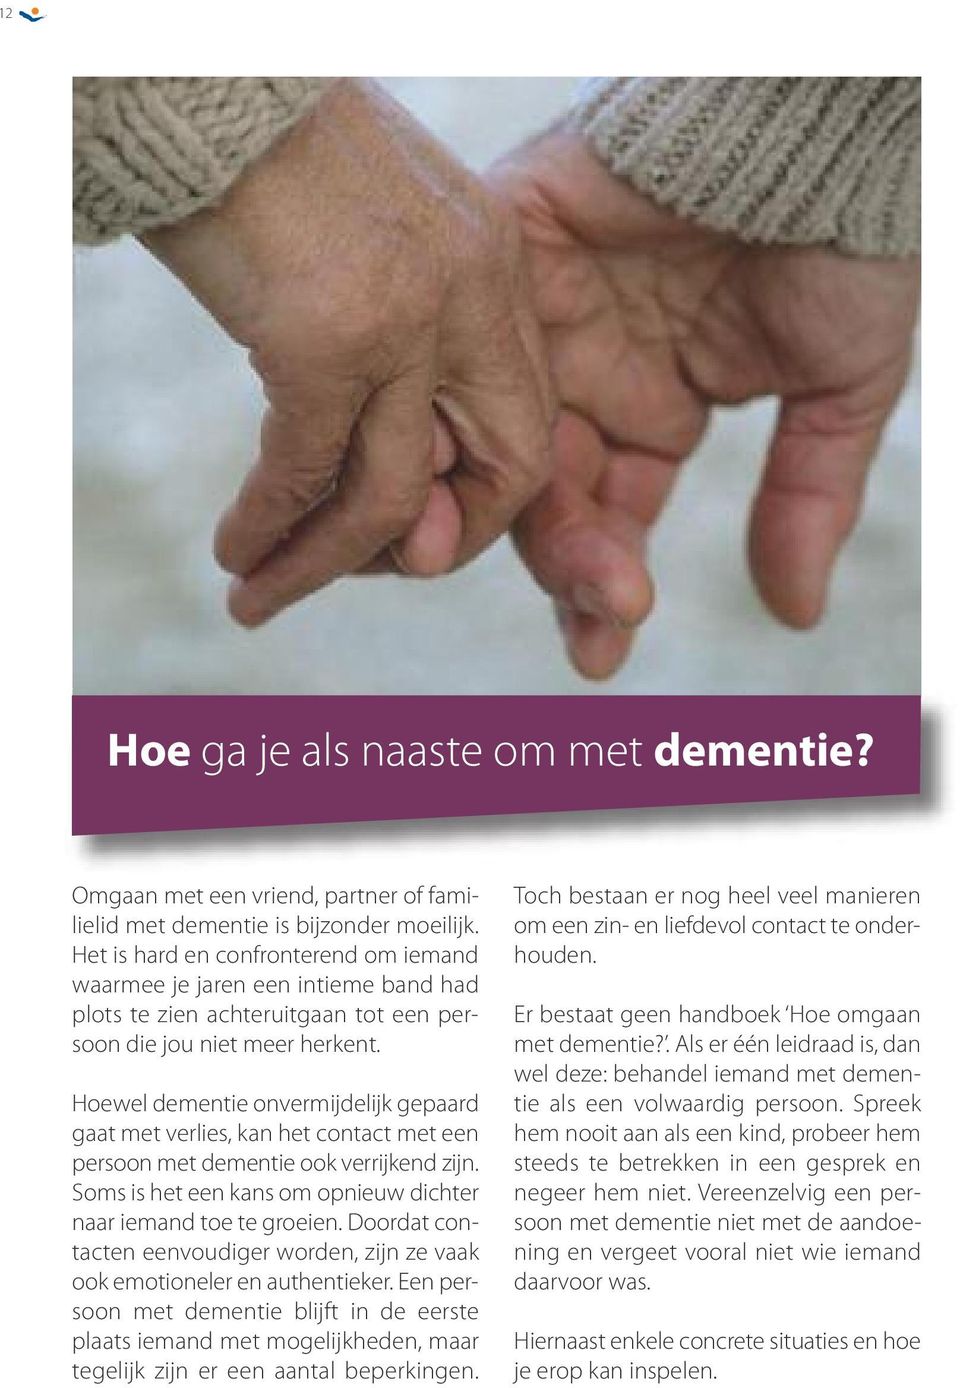 Hoewel dementie onvermijdelijk gepaard gaat met verlies, kan het contact met een persoon met dementie ook verrijkend zijn. Soms is het een kans om opnieuw dichter naar iemand toe te groeien.